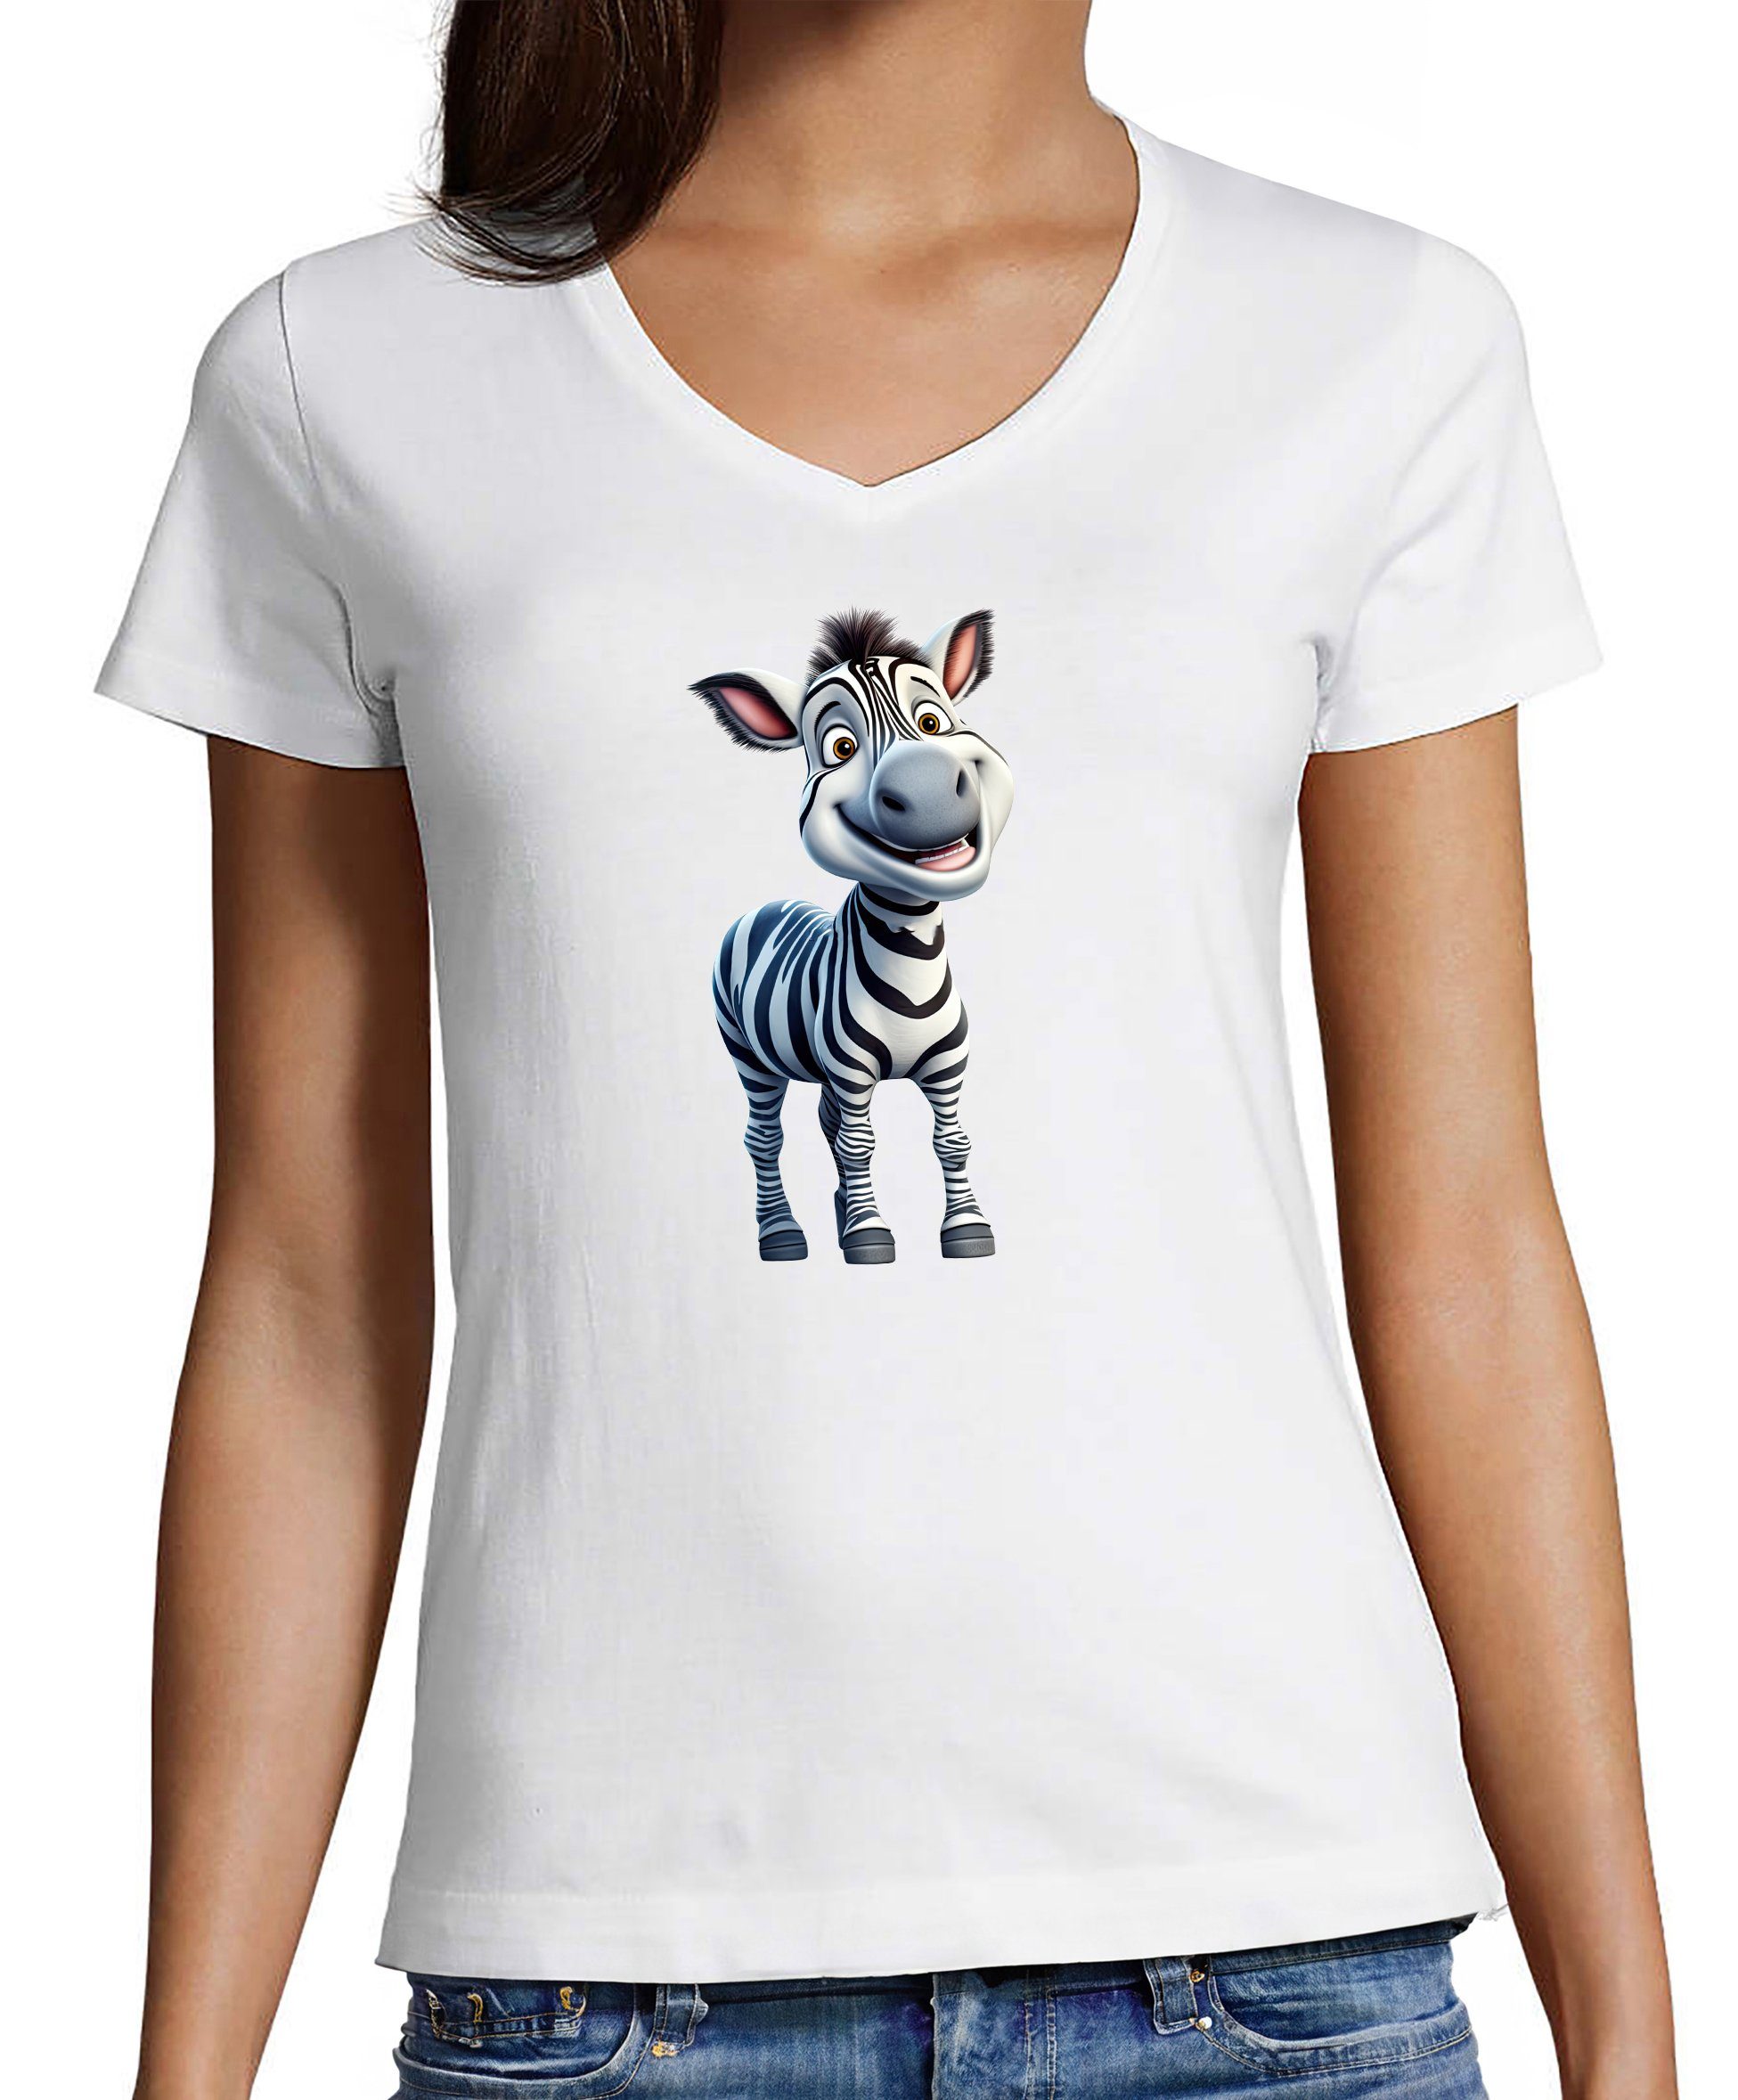 MyDesign24 T-Shirt Damen Wildtier Print Shirt - Baby Zebra V-Ausschnitt  Baumwollshirt mit Aufdruck Slim Fit, i280